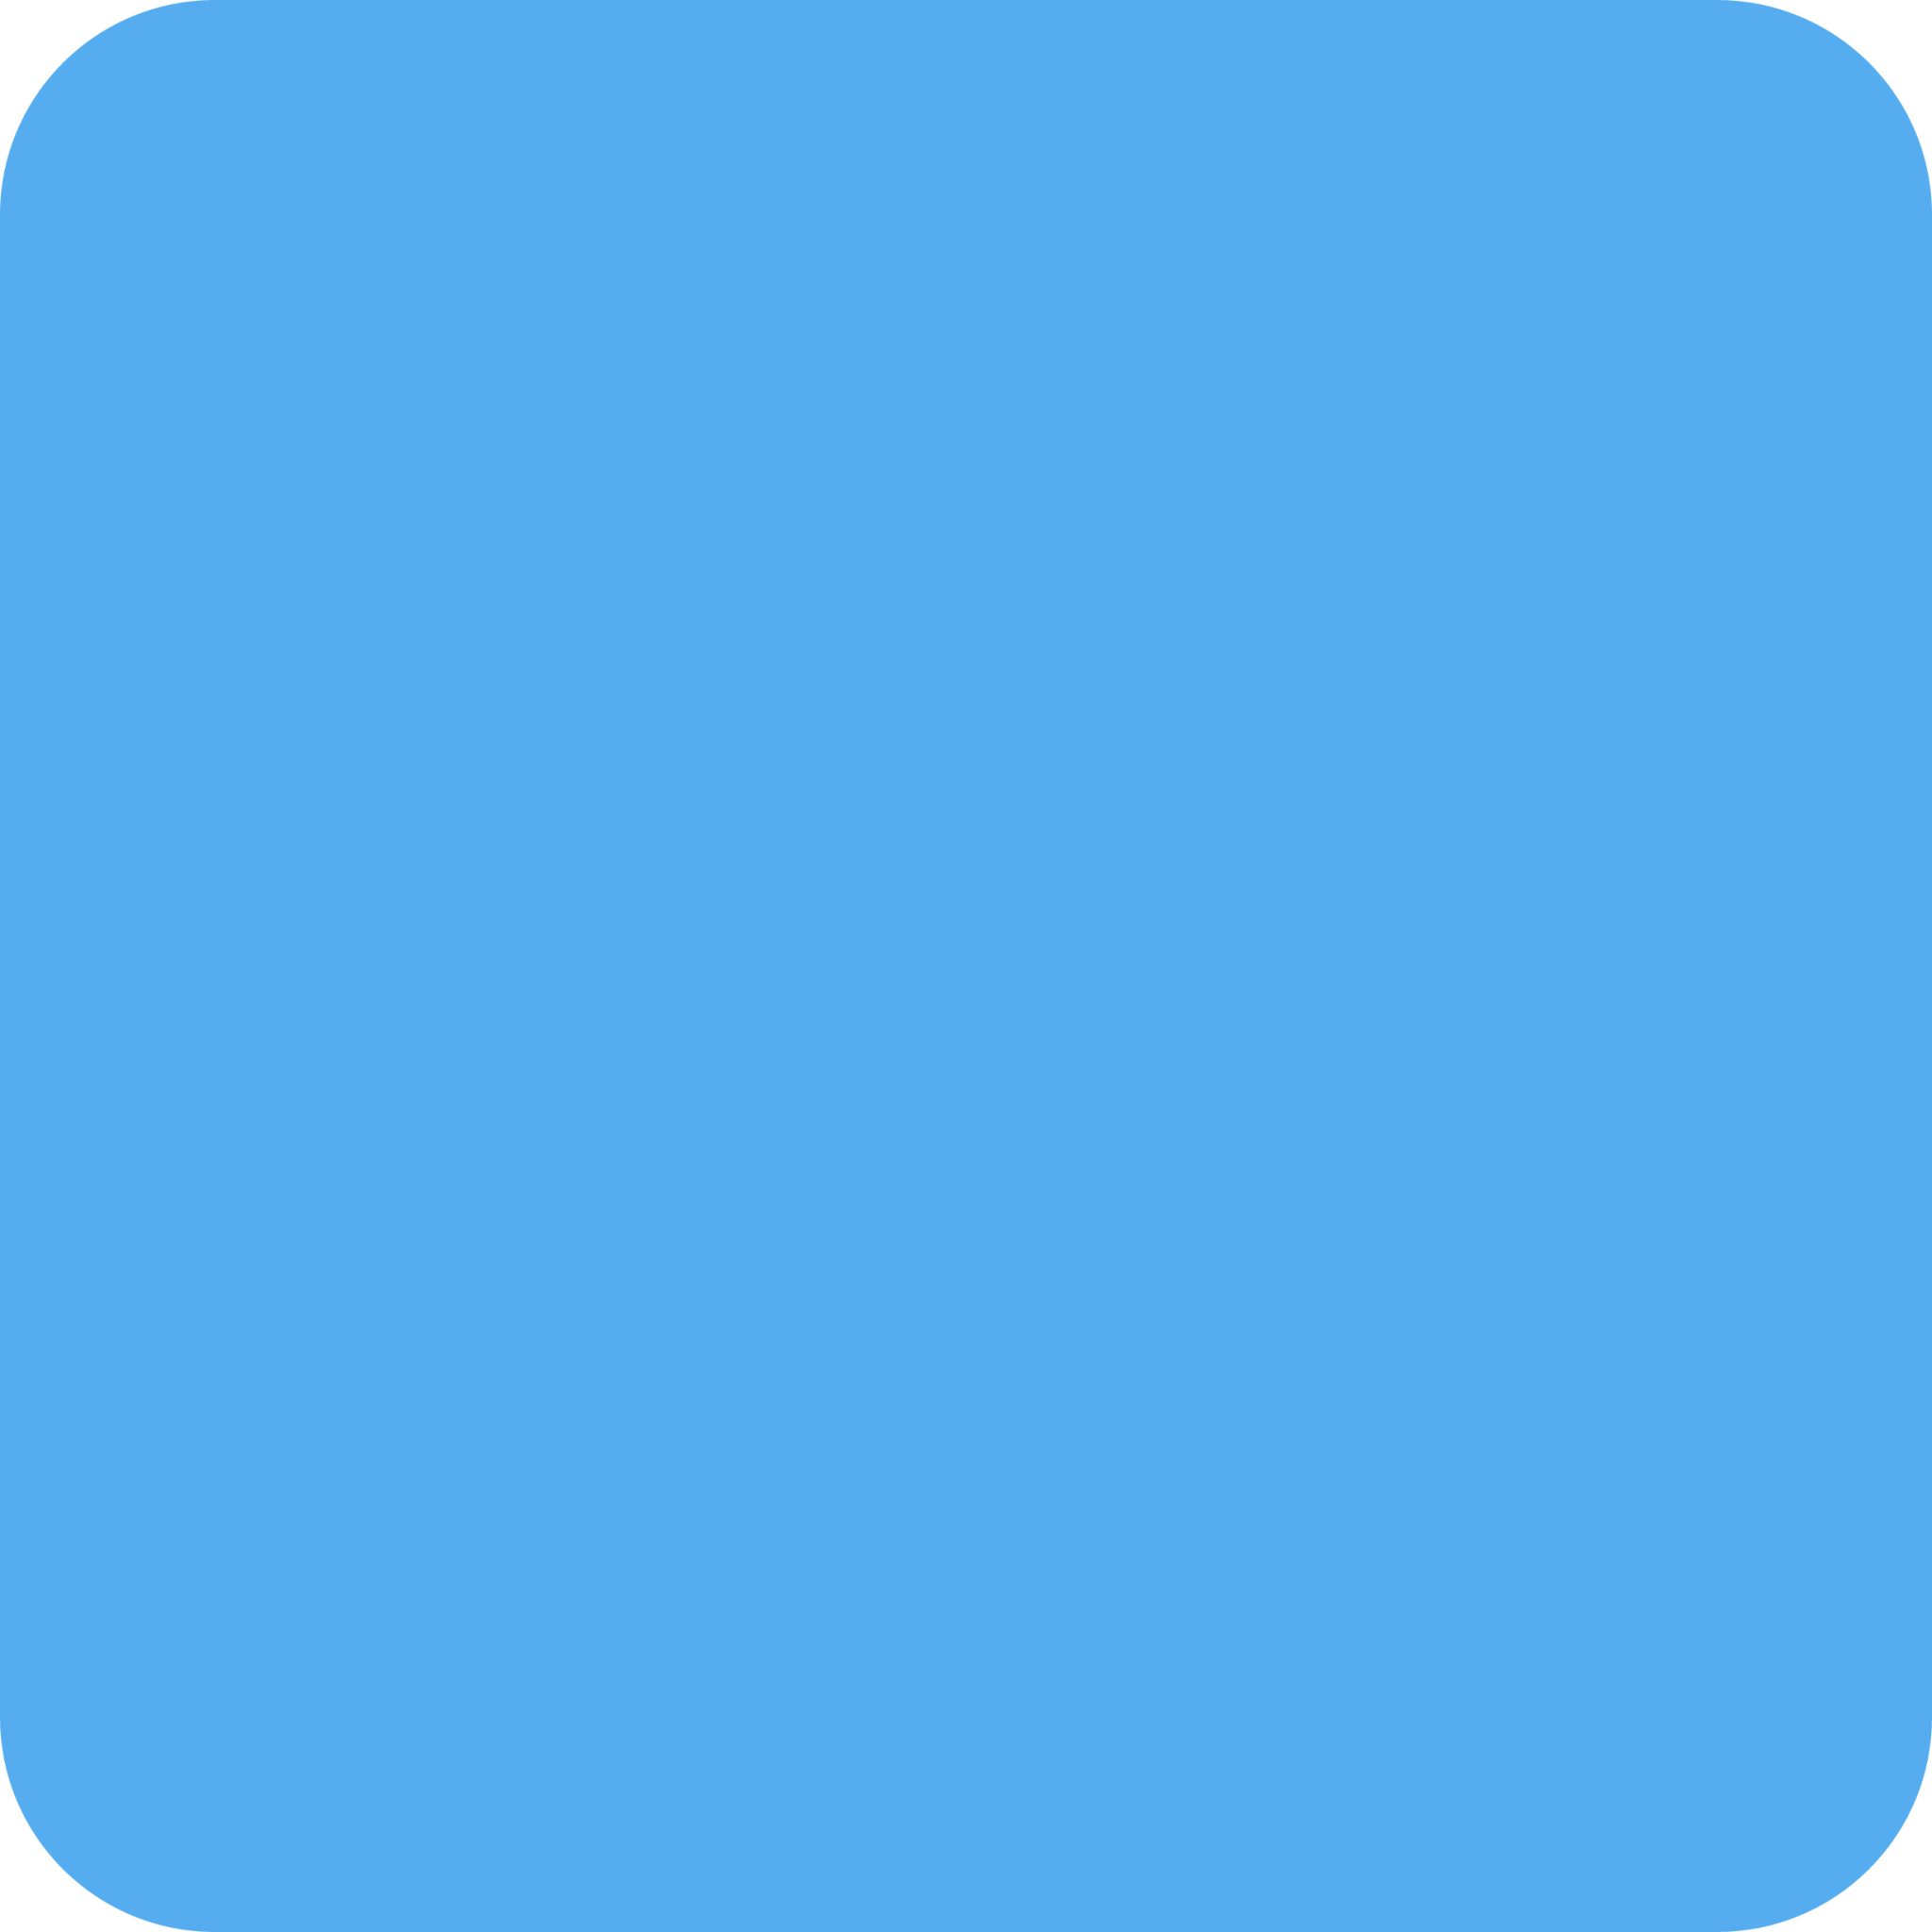 blue square emoji